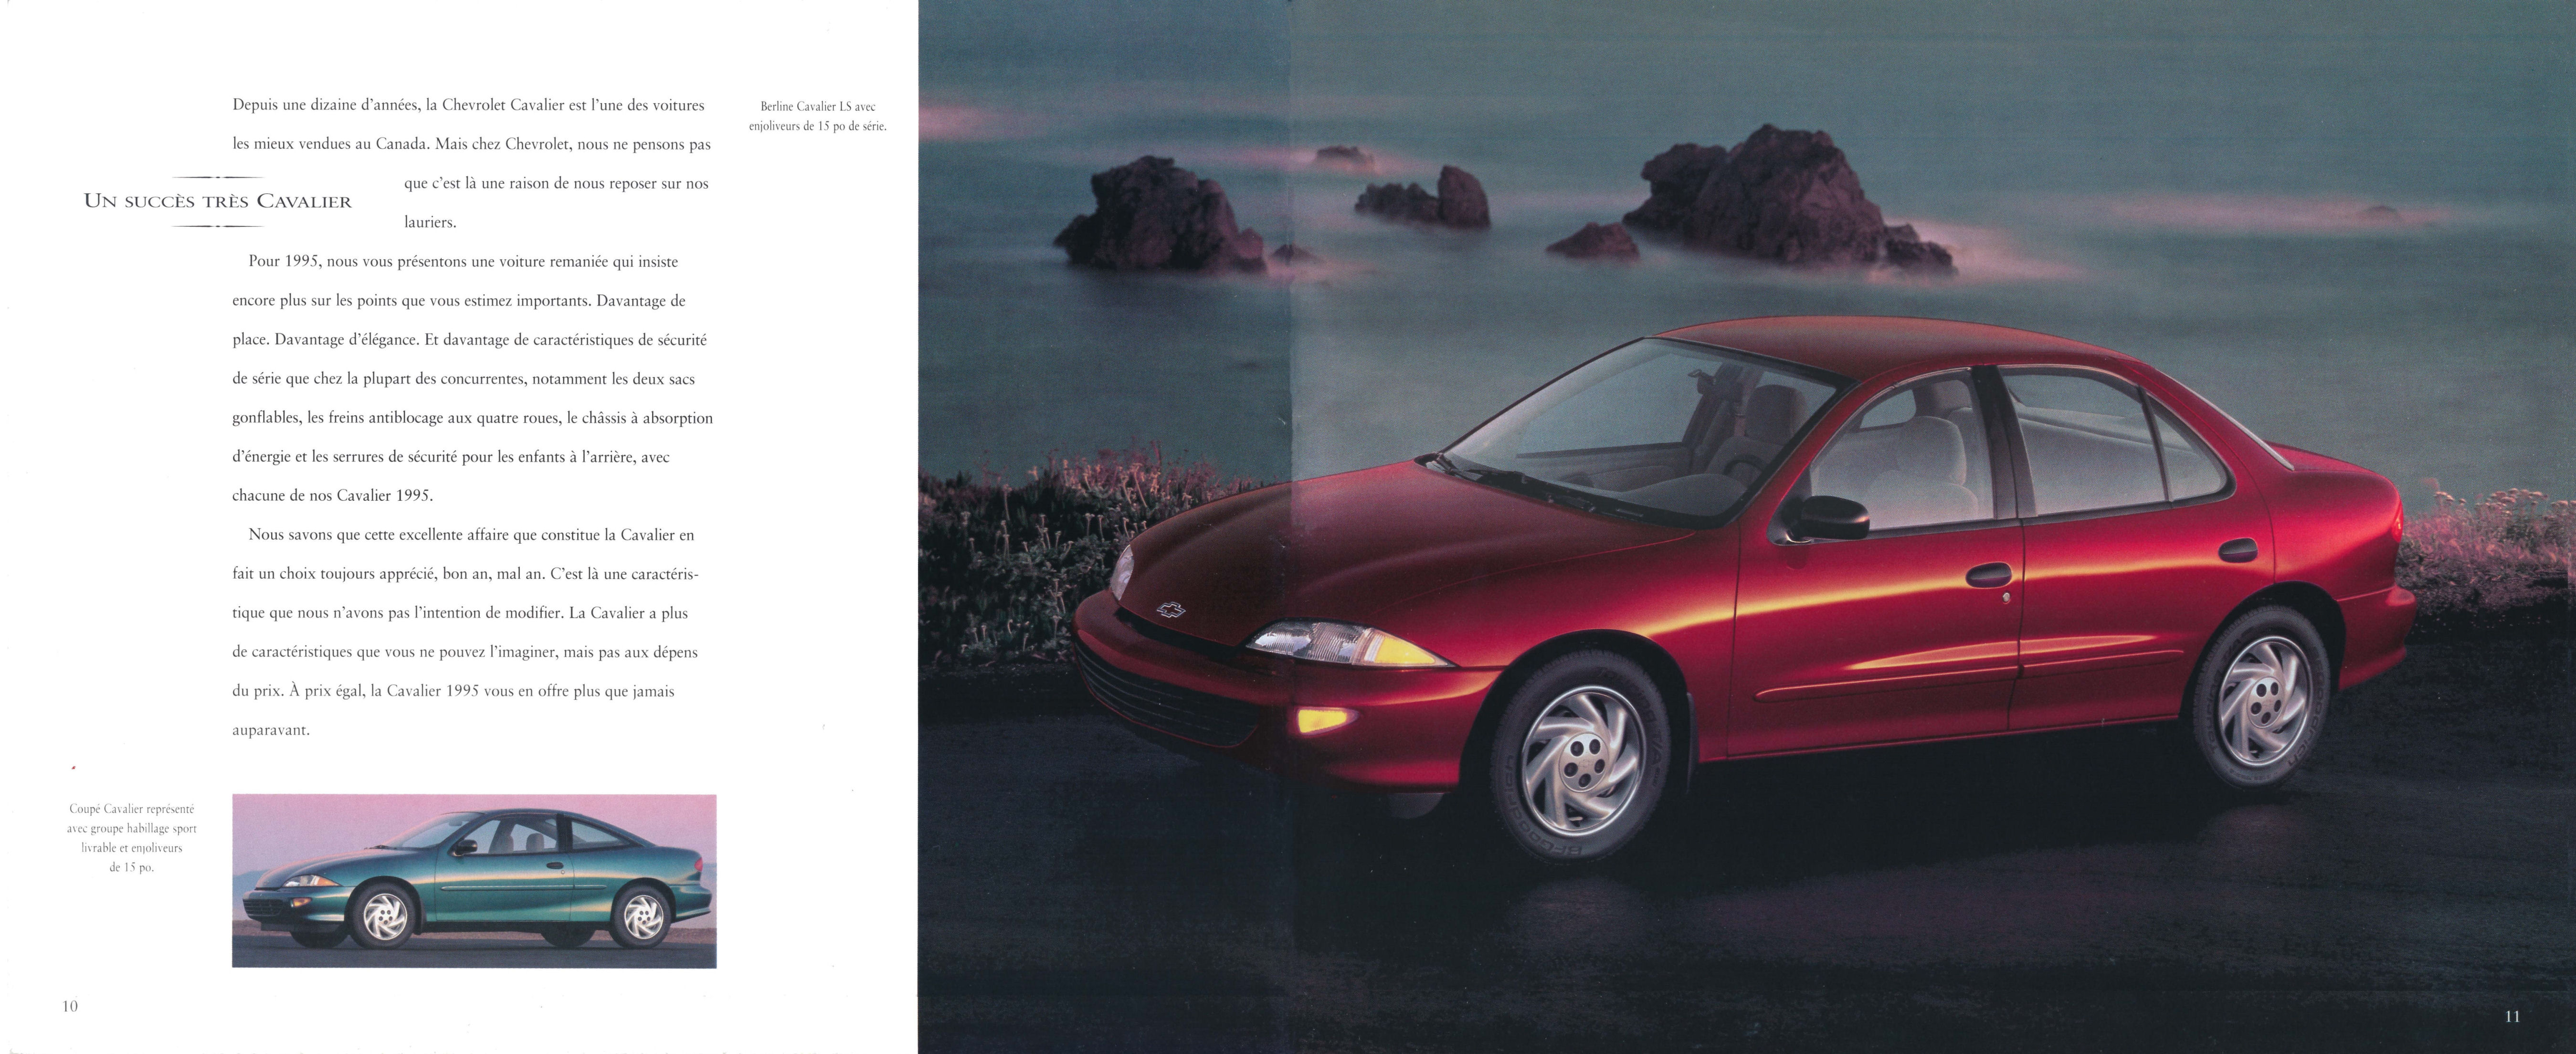 1995_Chevrolet_Full_Line_Cdn-Fr-10-11